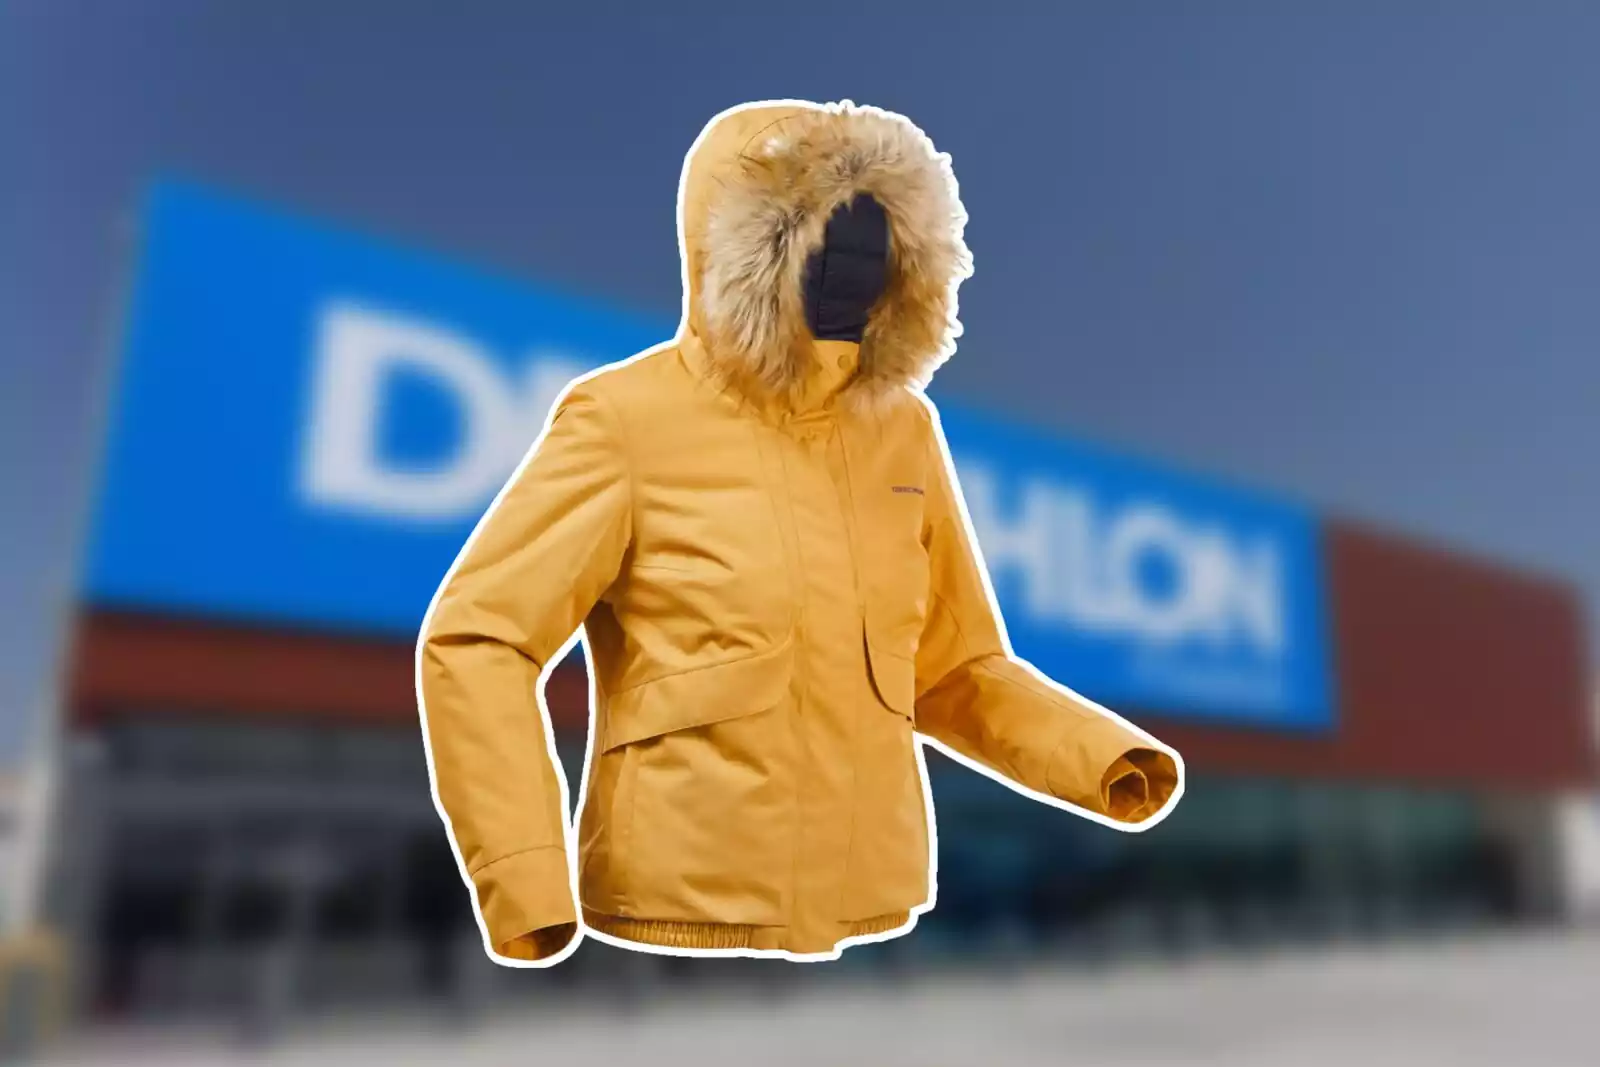 Las 10 chaquetas abrigos de Decathlon arrasan: más calidad que las marcas caras